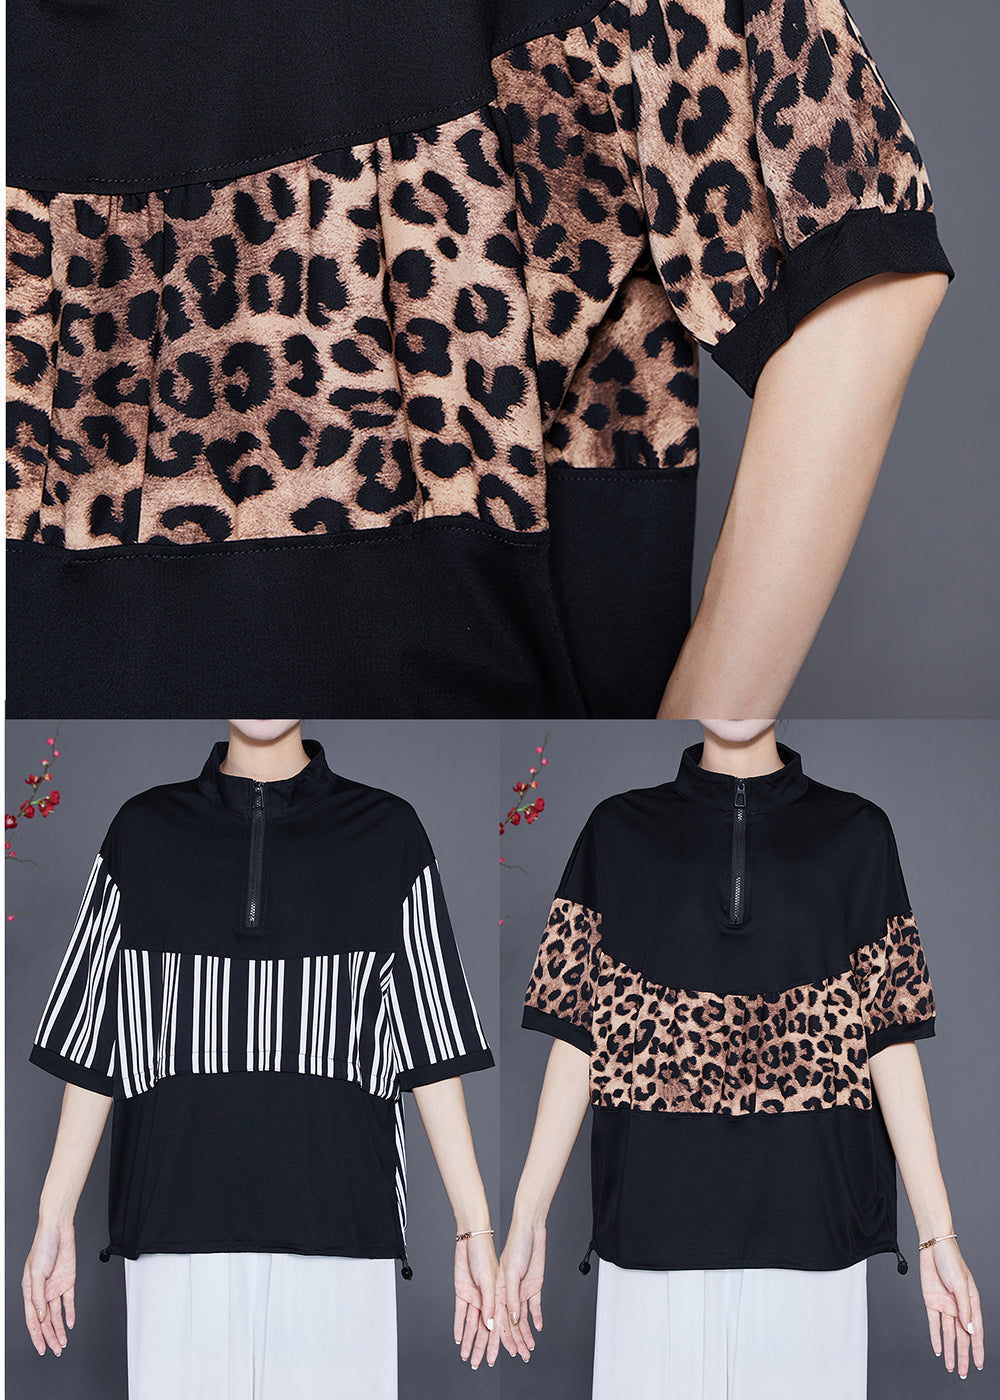 Black Patchwork Leopard Cotton Sweatshirts Top Drawstring Summer